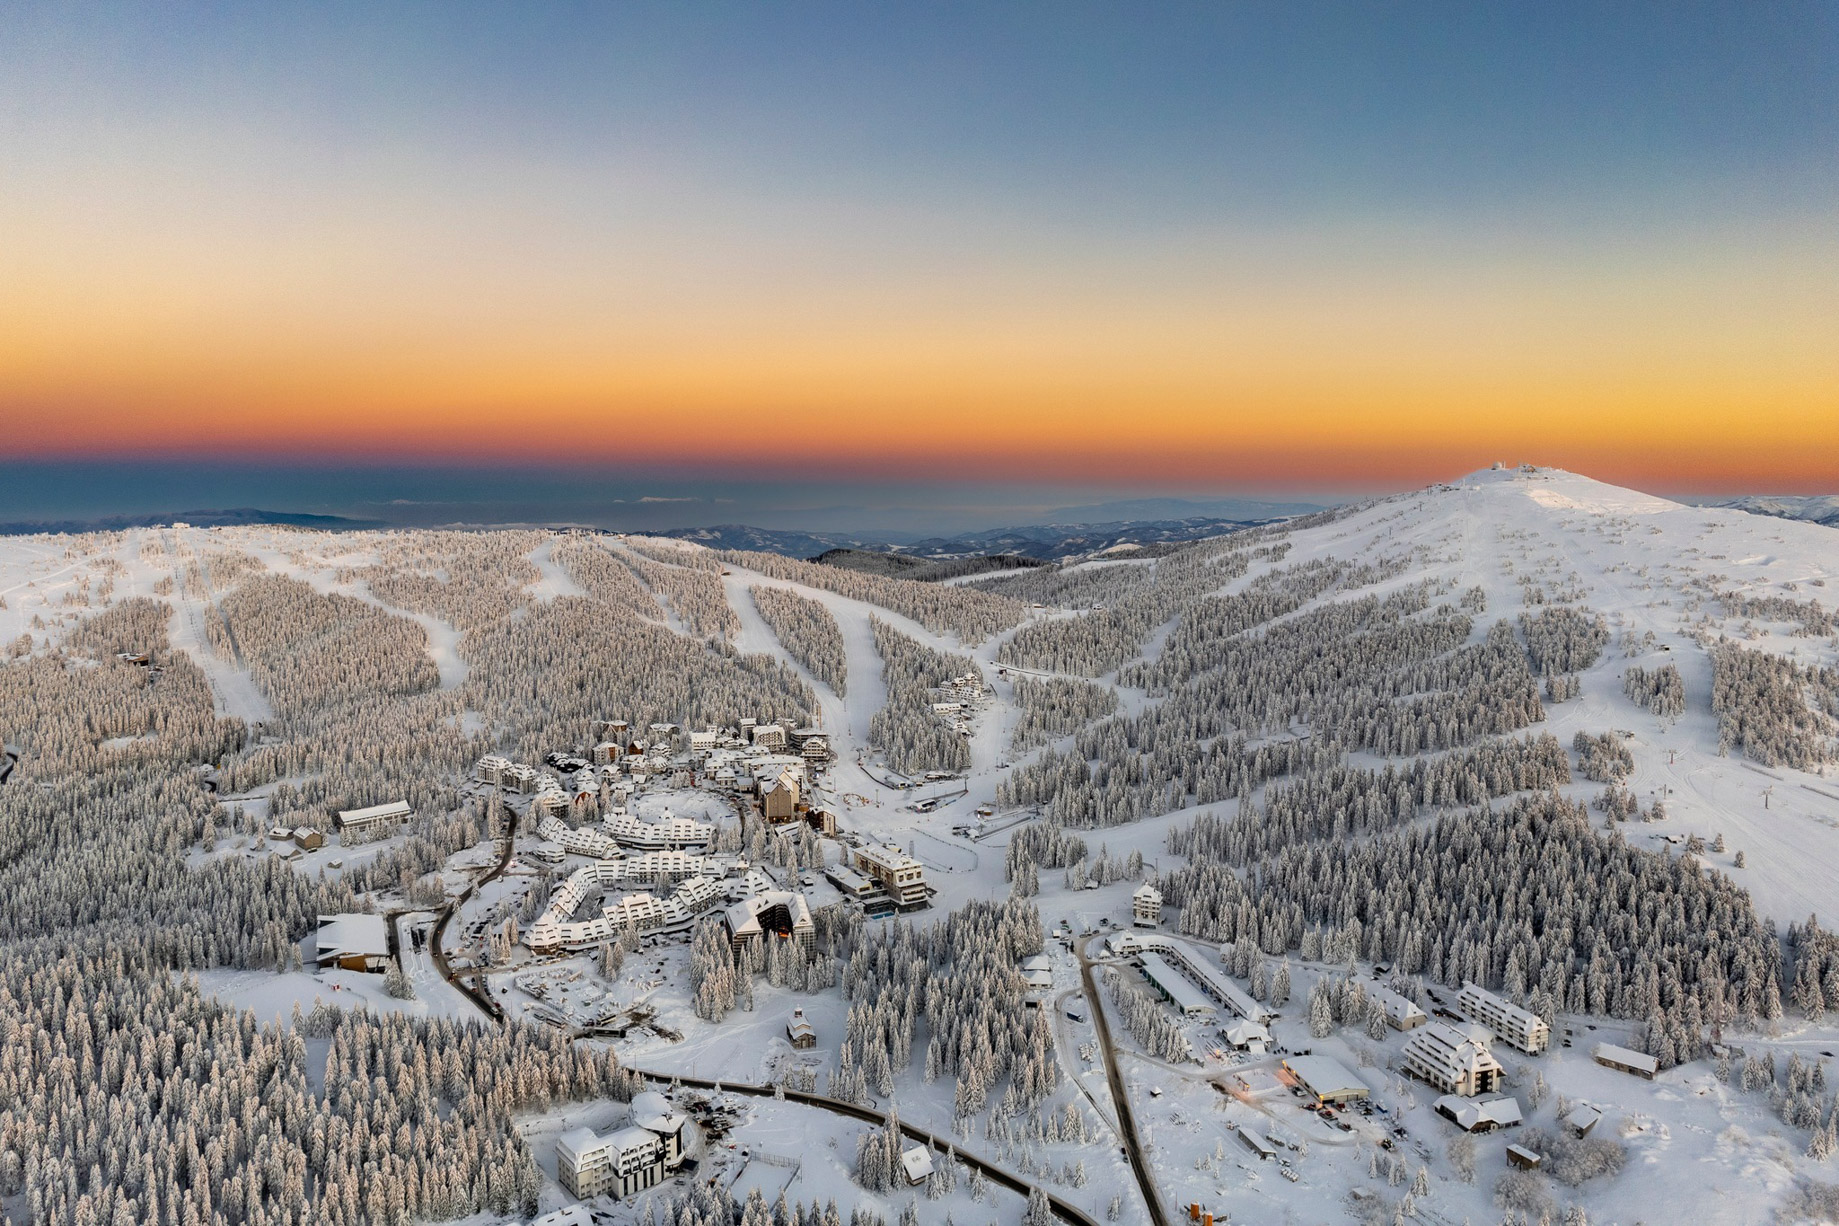 Viceroy Kopaonik Serbia Mountain Resort – Kopaonik, Serbia – Winter Mountain View Sunset